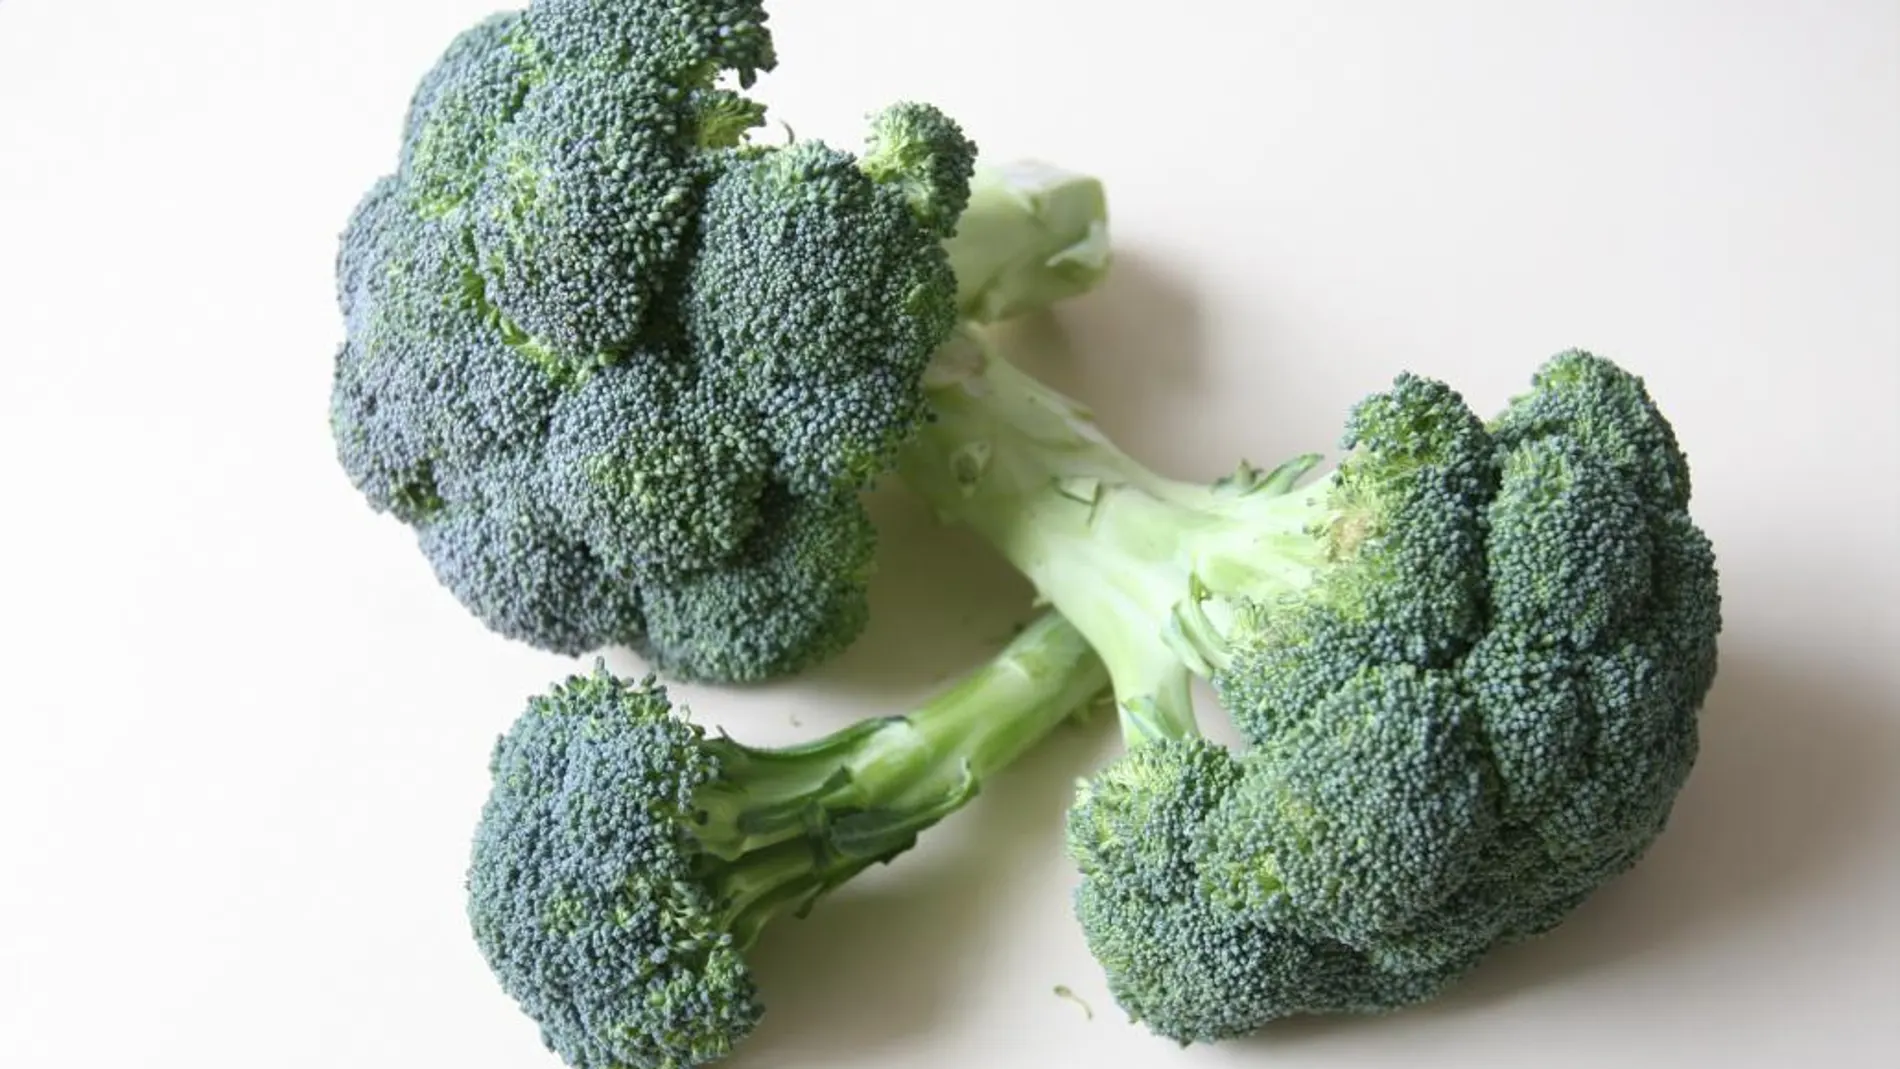 Un extracto de brotes de brócoli puede ser eficz contra la diabetes